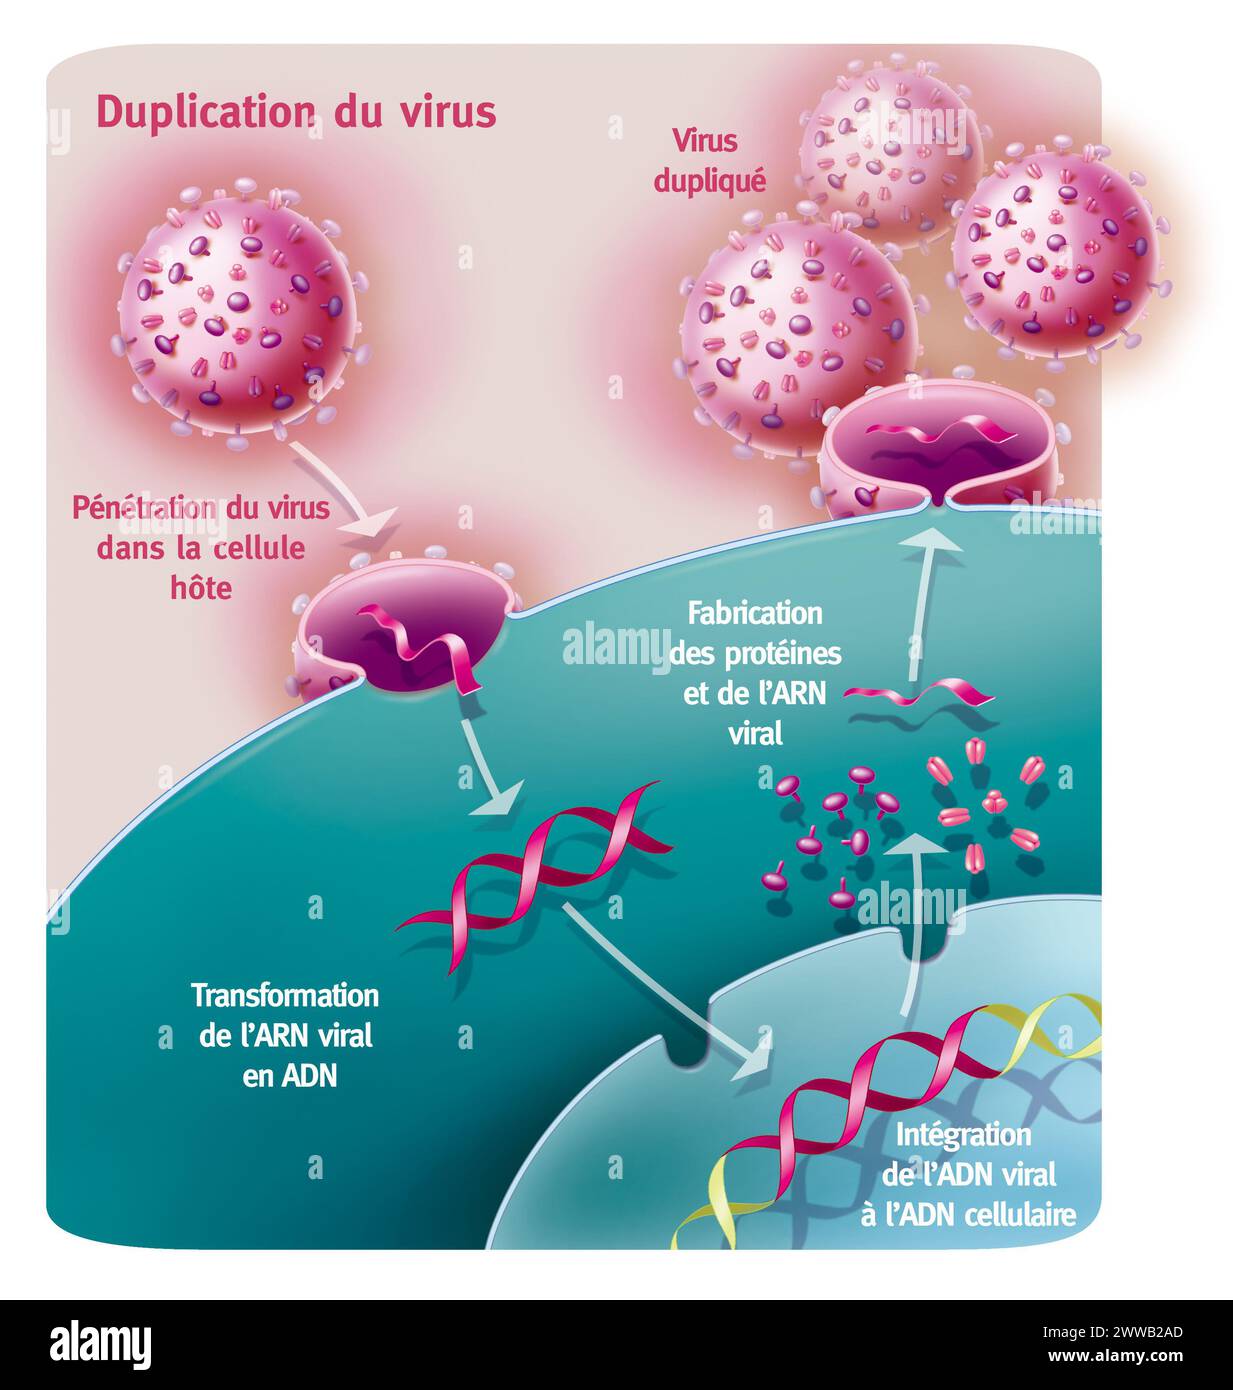 Duplicazione di un virus di tipo retrovirus. Rappresentazione della penetrazione e duplicazione di un retrovirus di tipo AIDS grazie a una cellula ospite. Foto Stock